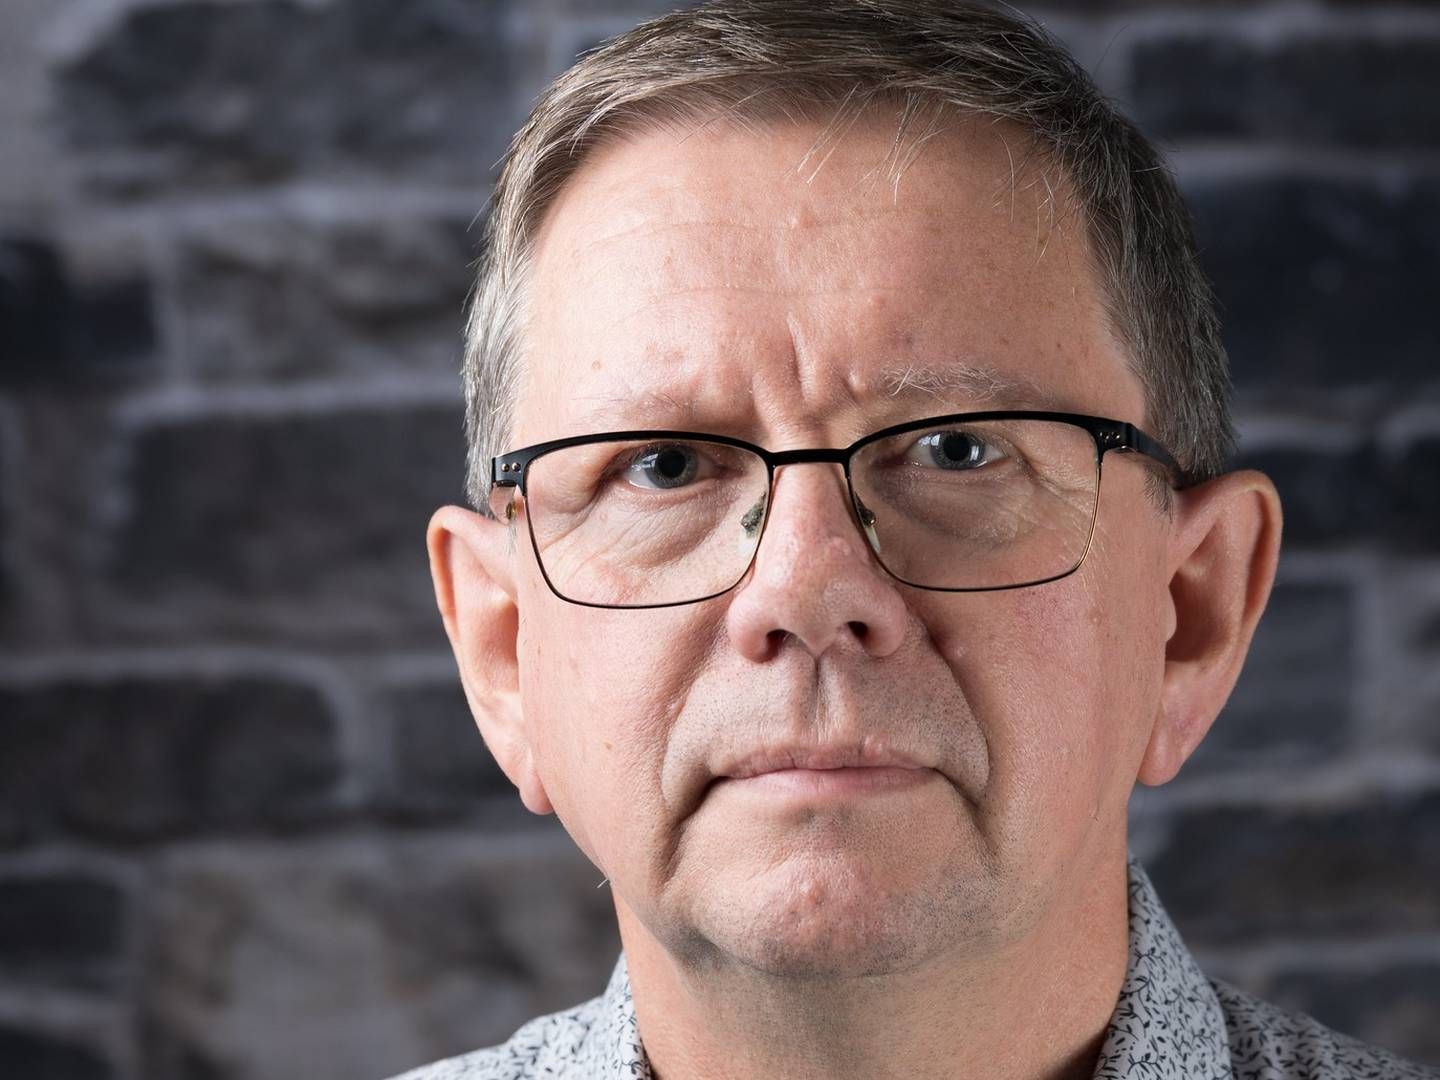 VIL HOLDE SEG OPPDATERT: Kommunikasjonsdirektør Tor Harald Haukås sier de vil følge med på eventuelle eier-endringer fremover. | Foto: Helse Midt